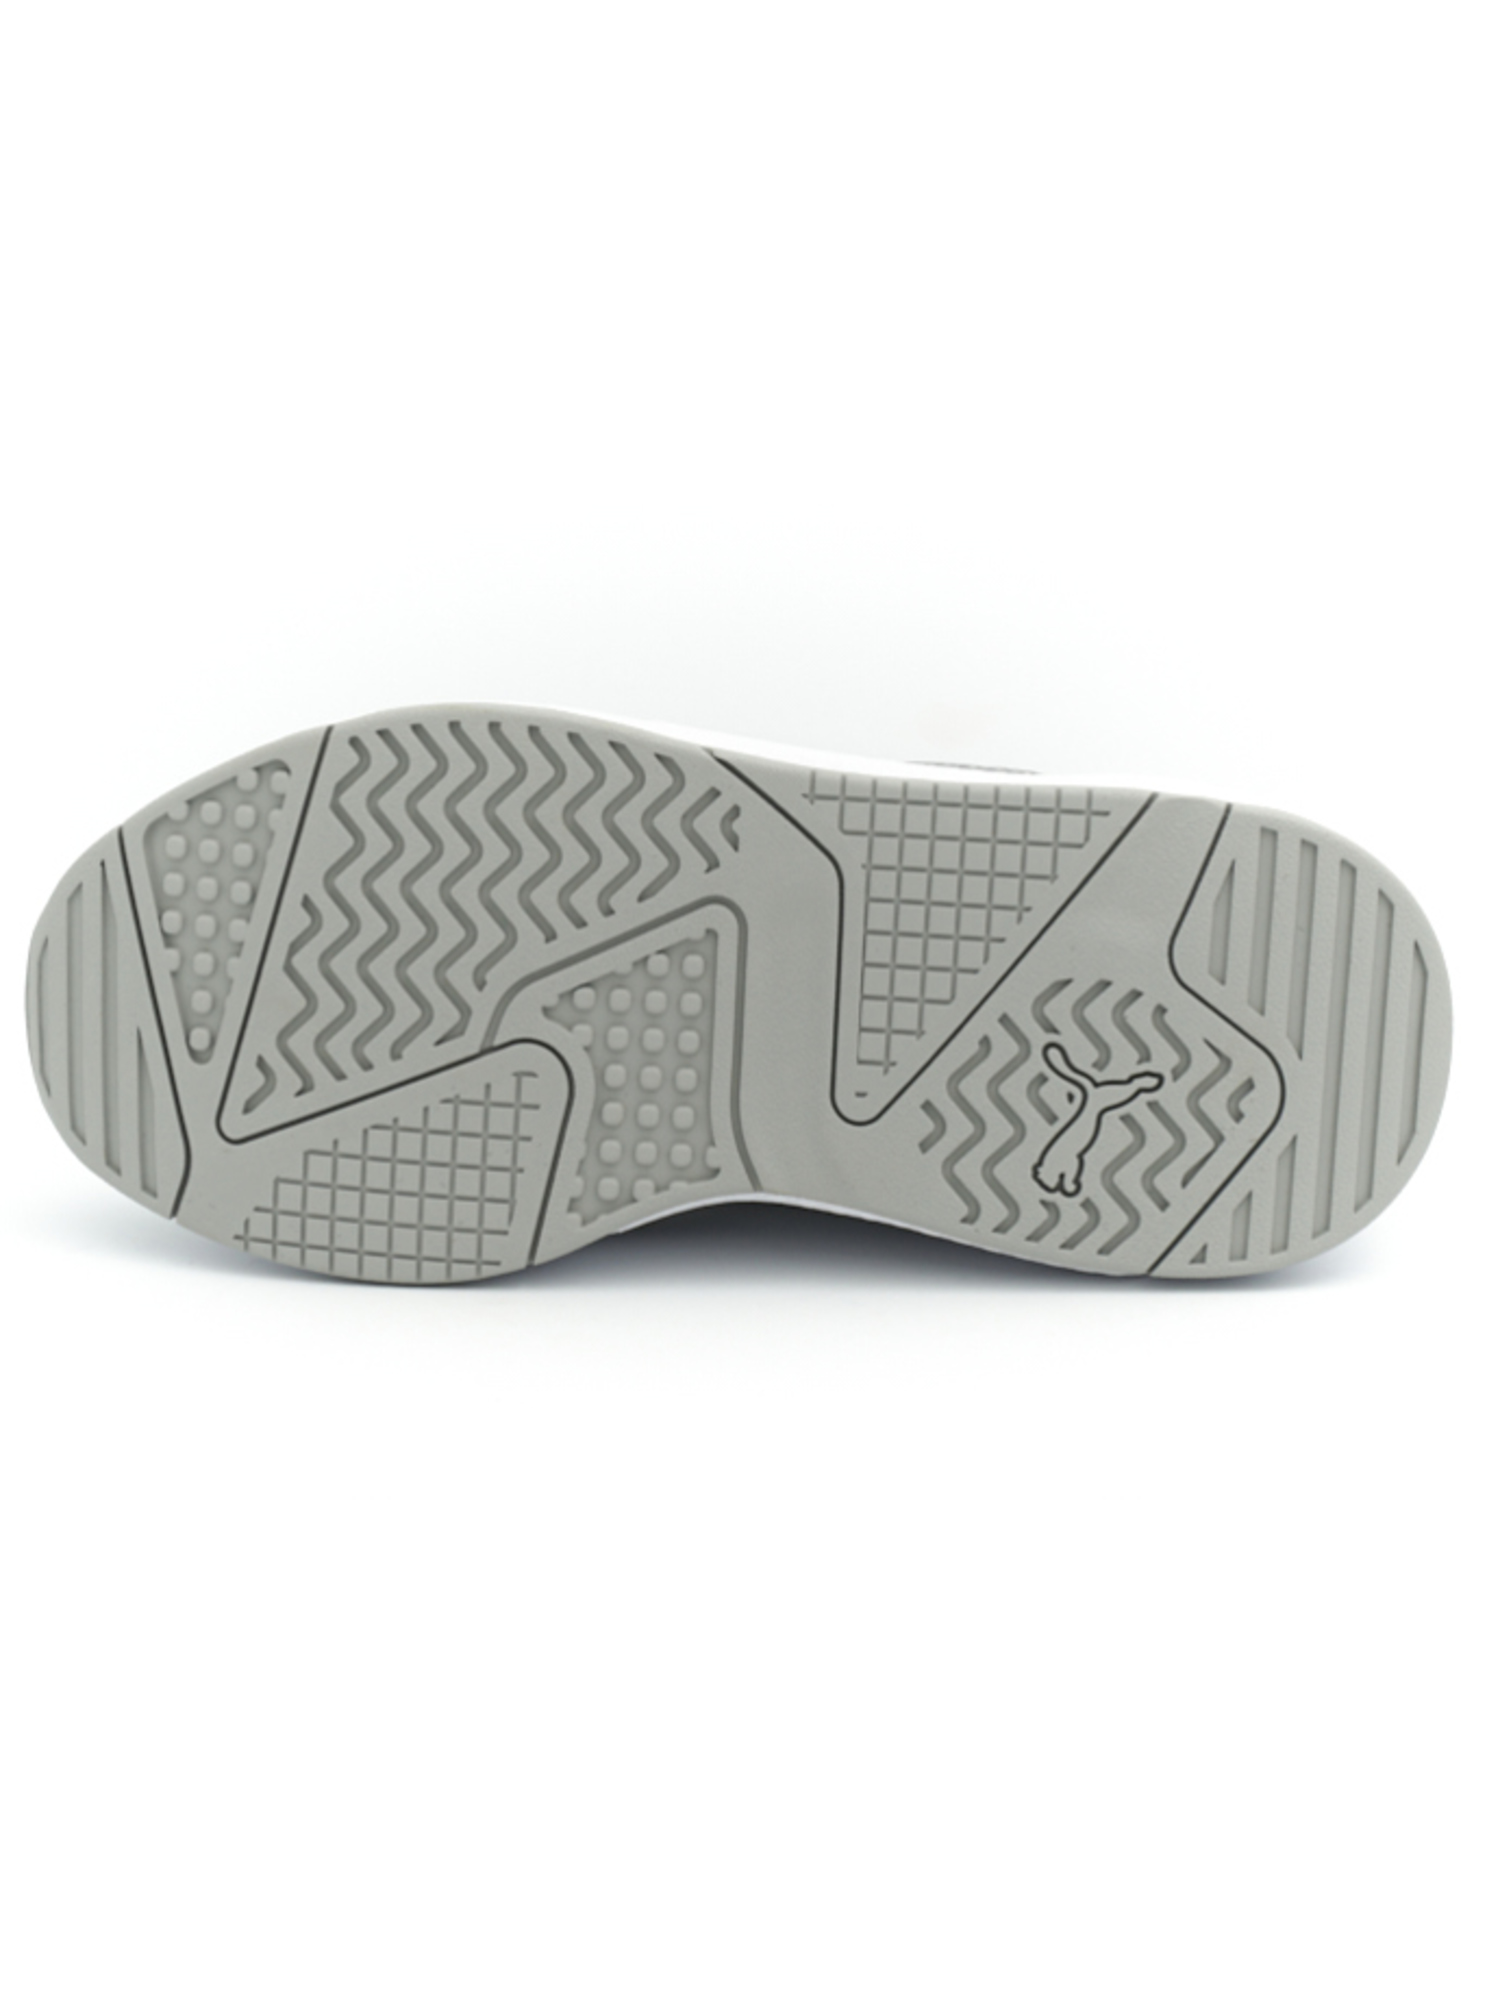 sneaker-puma-donna-linea-x-ray-2-square-argento